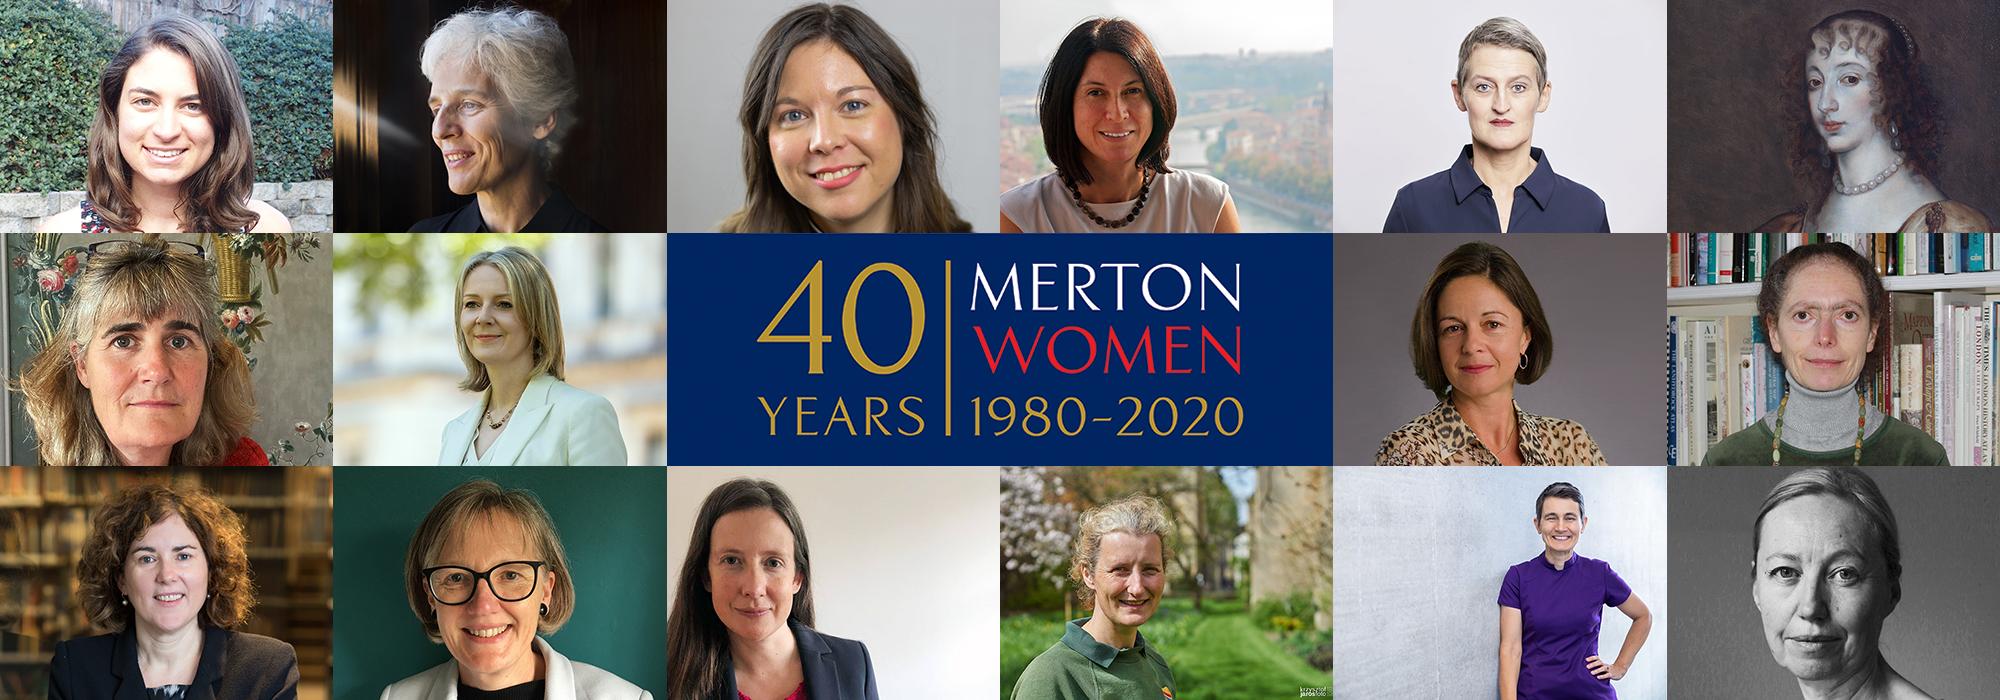 40 Years: Merton Women 1980-2020